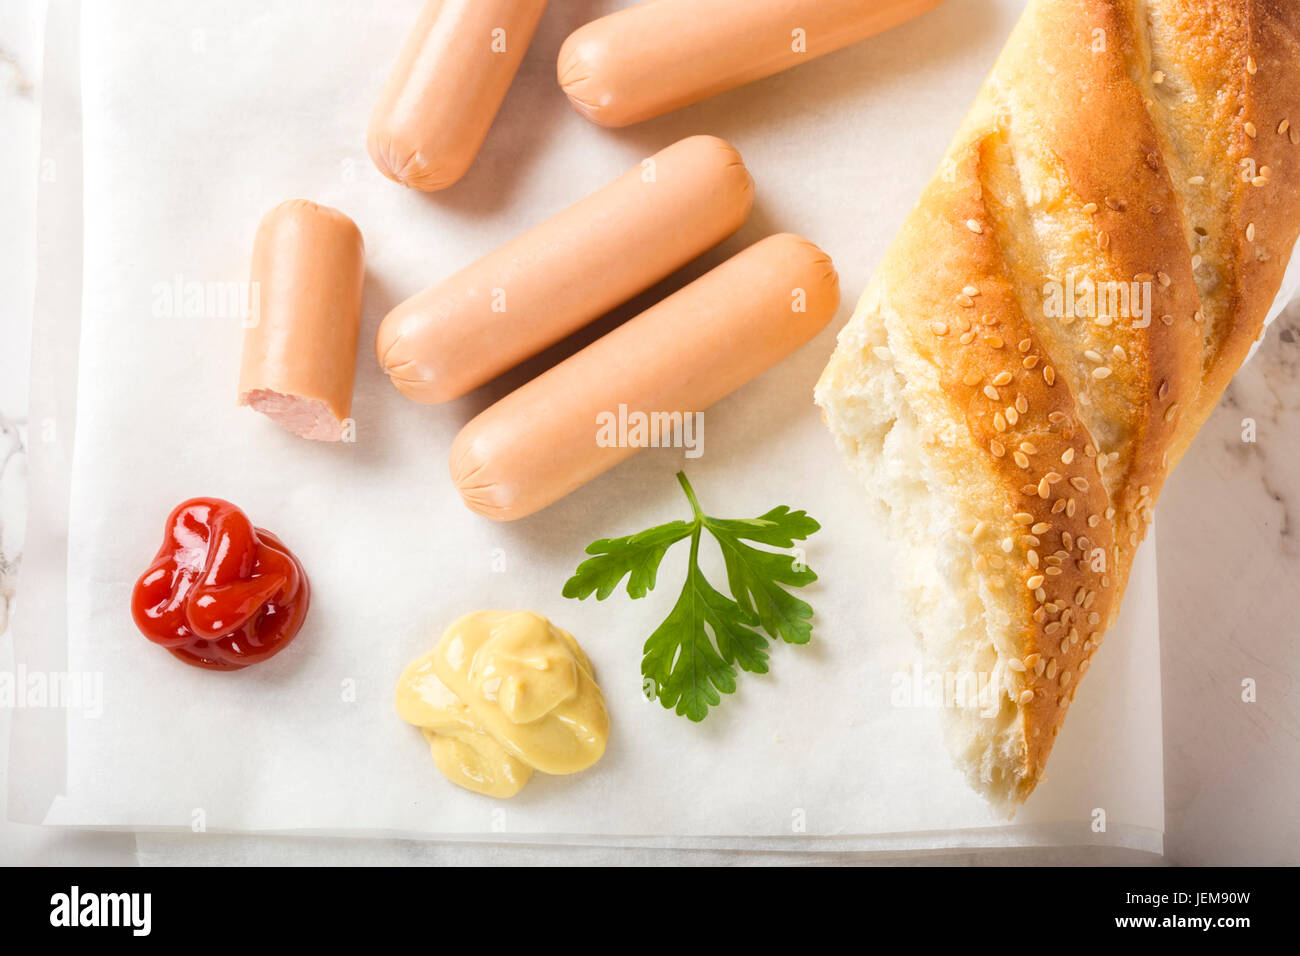 Saucisses (Frankfurter) sur papier avec du pain, de la moutarde et du ketchup Banque D'Images